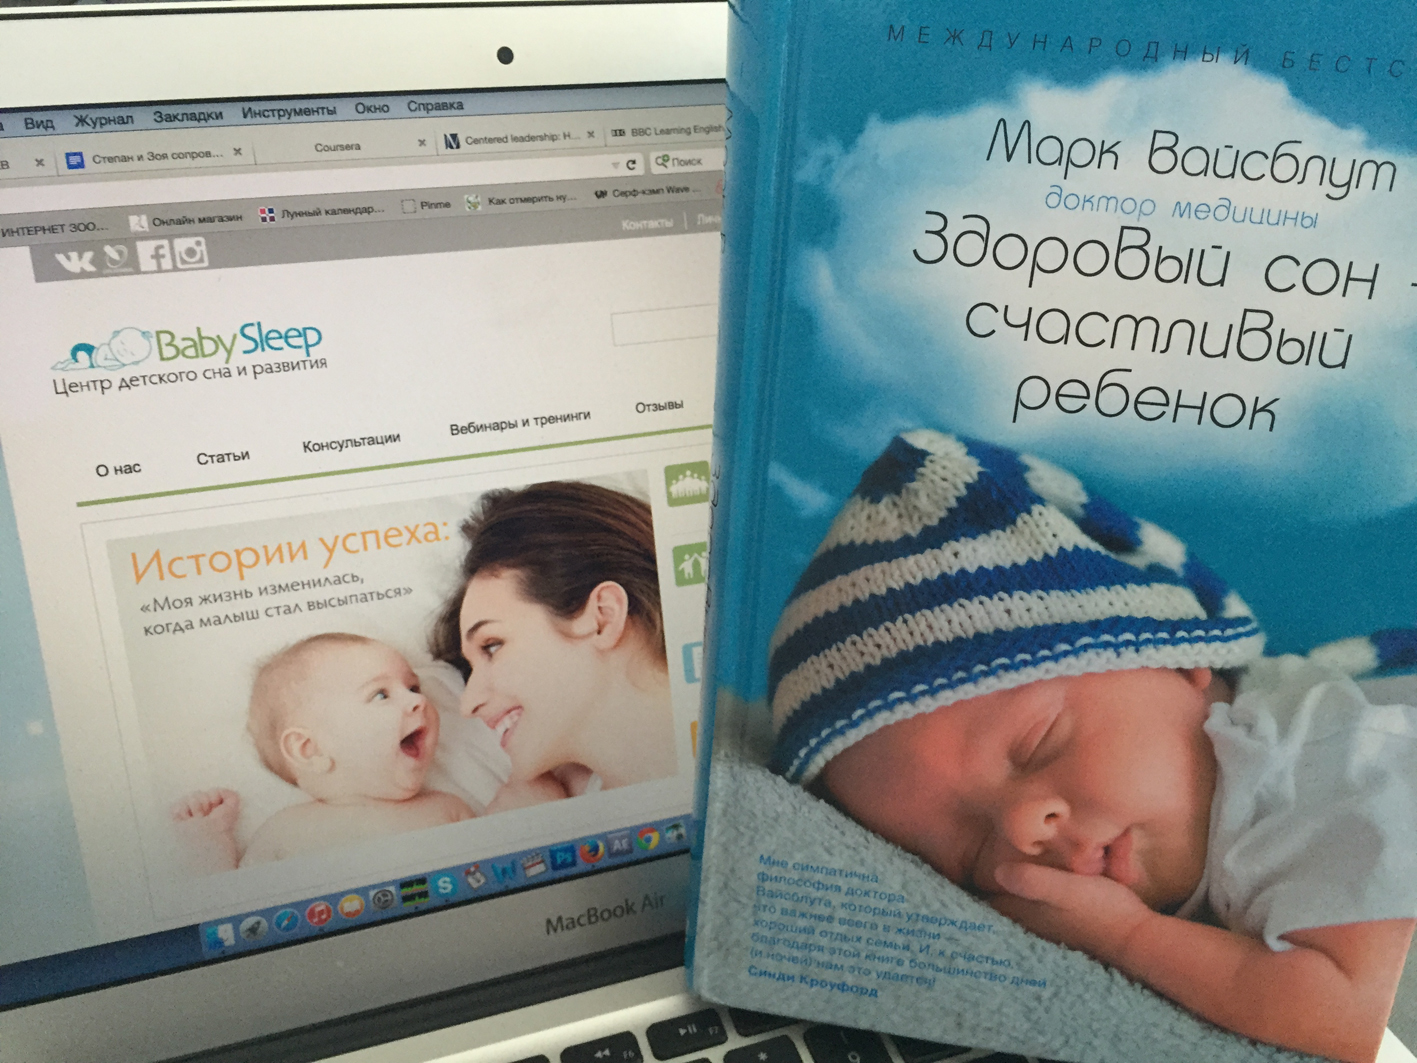 Рецензия BabySleep на книгу Марка Вайсблута «Здоровый сон — счастливый ребенок»